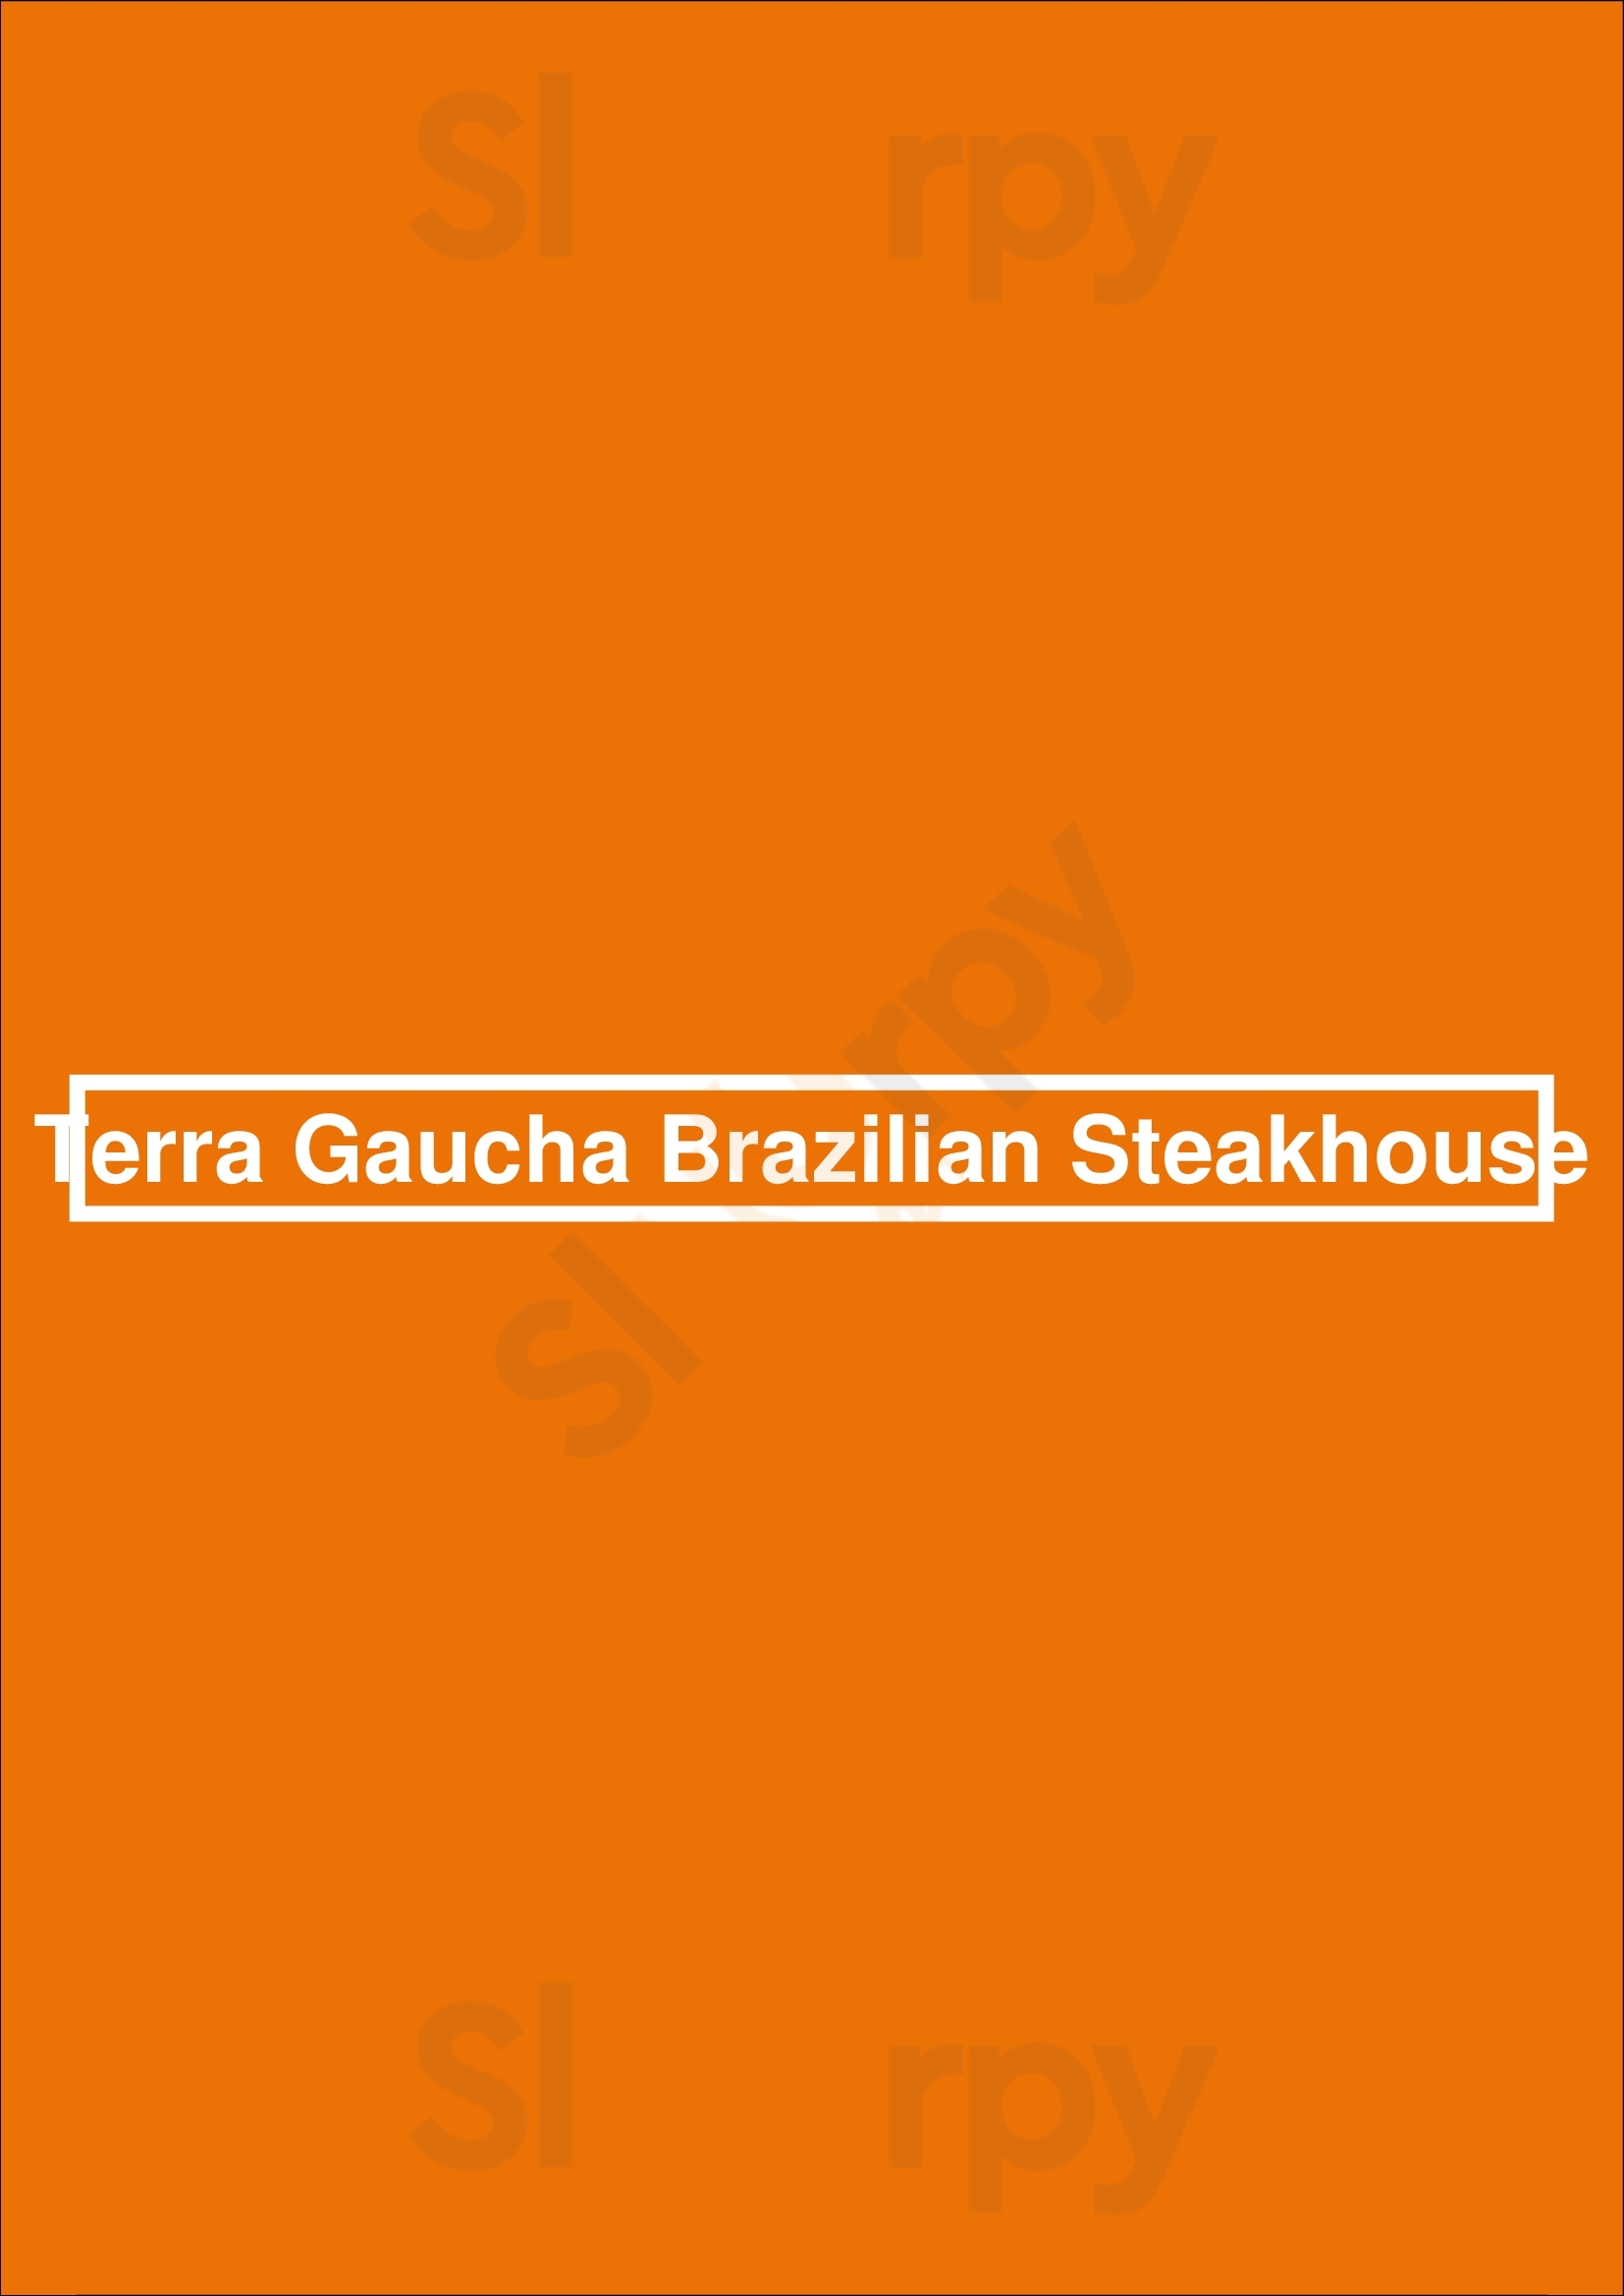 Terra Gaucha Brazilian Steakhouse Jacksonville Menu - 1